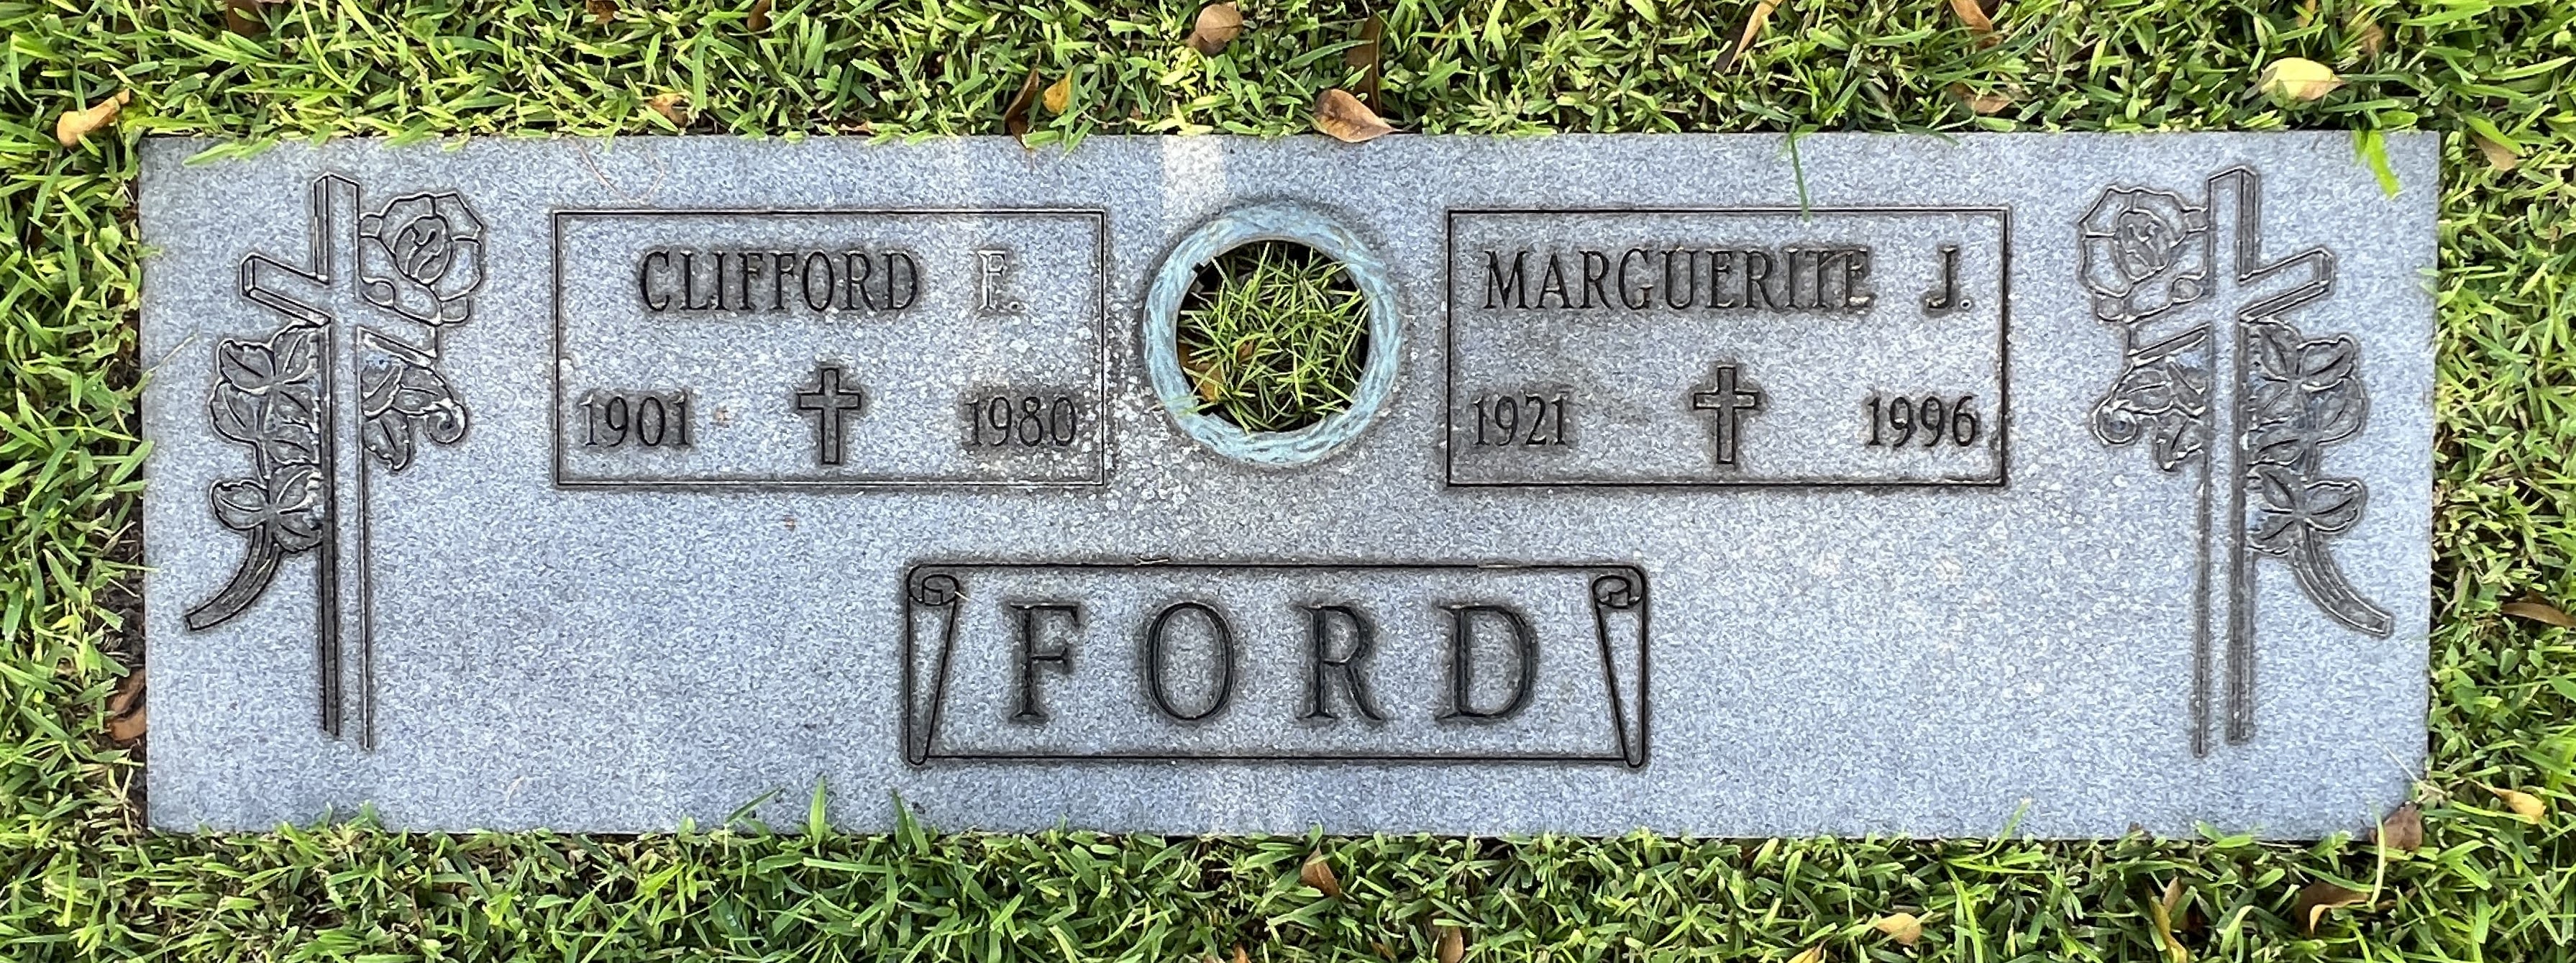 Clifford F Ford